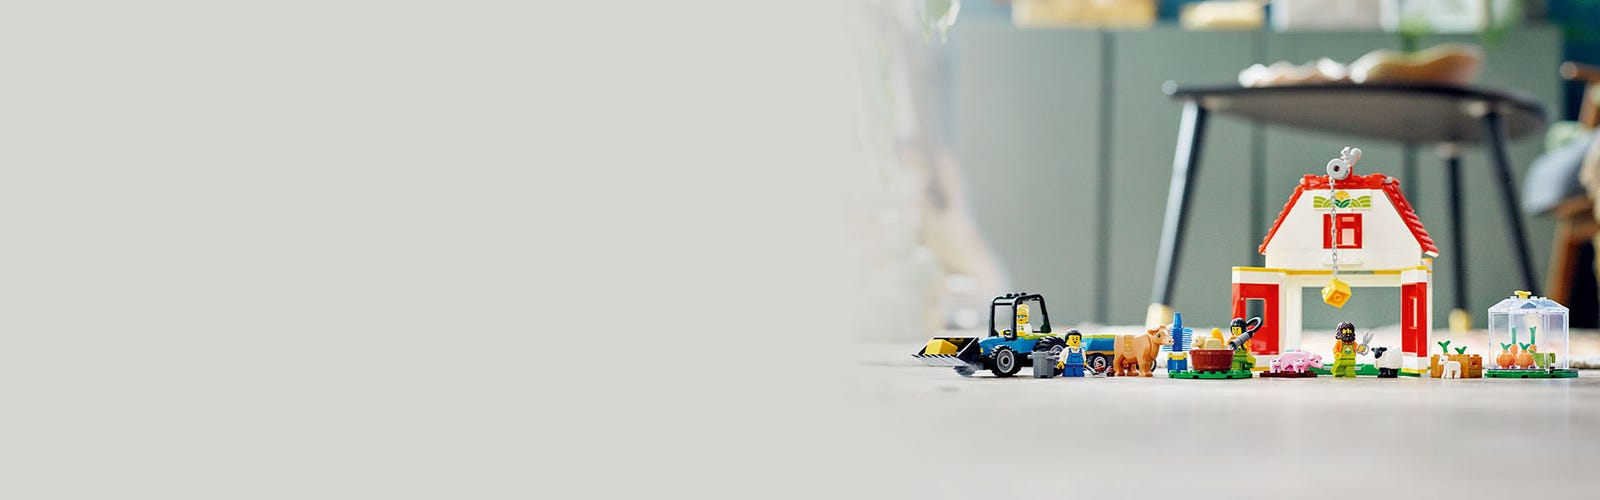 LEGO City Barn & Farm Animals 60346 - Juego de juguetes de construcción  para niños, niños y niñas preescolares a partir de 4 años (230 piezas)